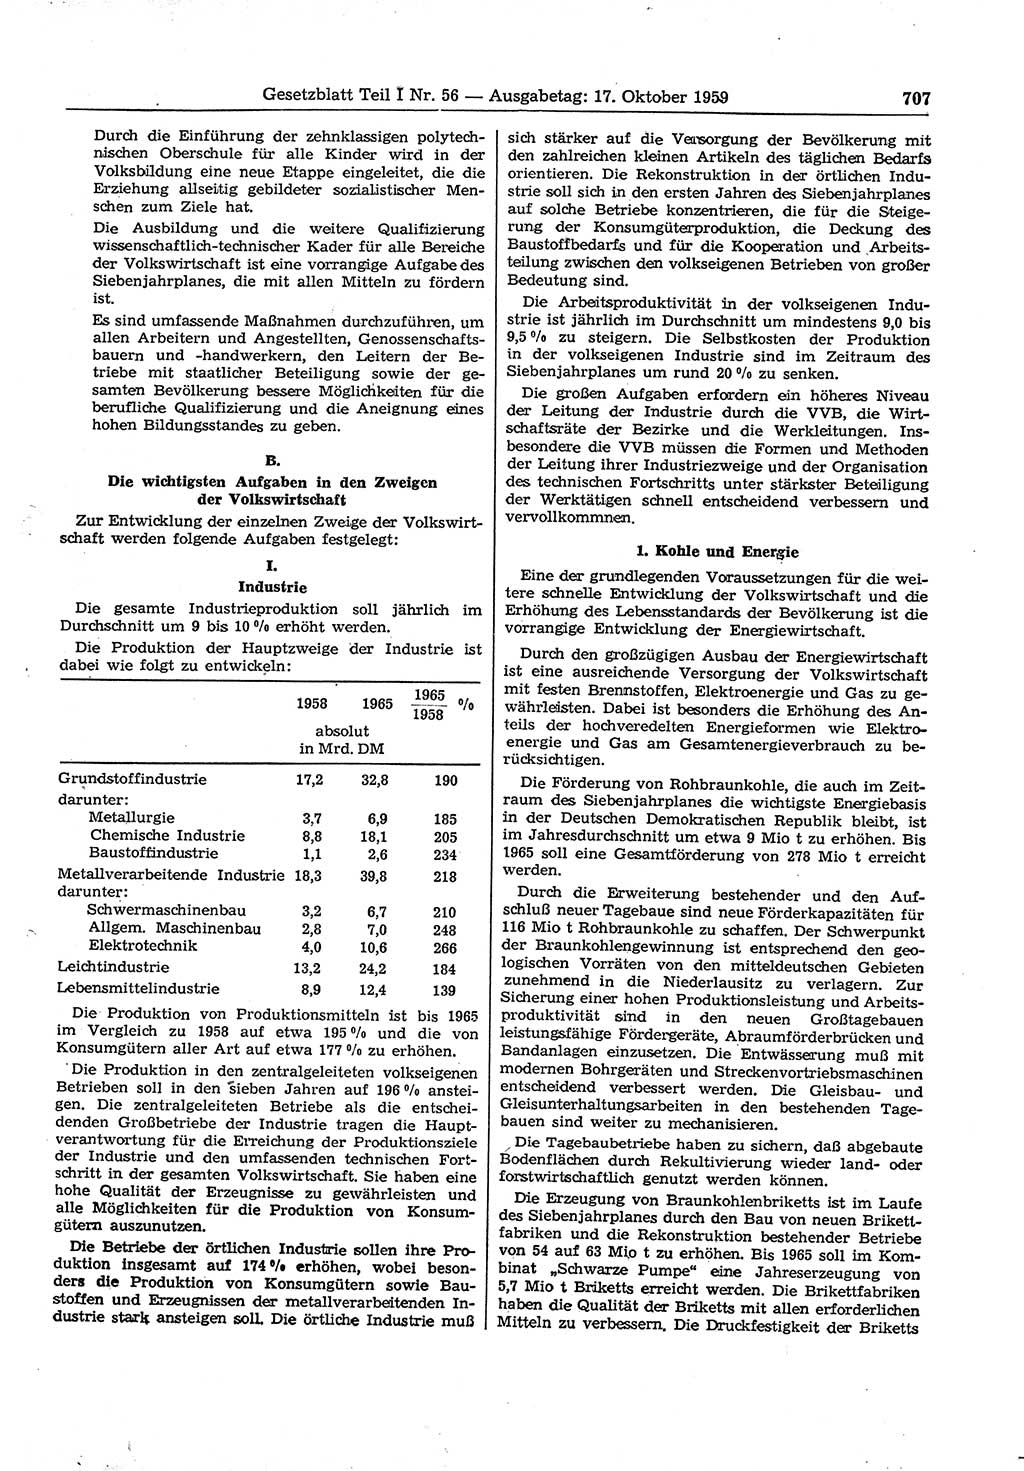 Gesetzblatt (GBl.) der Deutschen Demokratischen Republik (DDR) Teil Ⅰ 1959, Seite 707 (GBl. DDR Ⅰ 1959, S. 707)